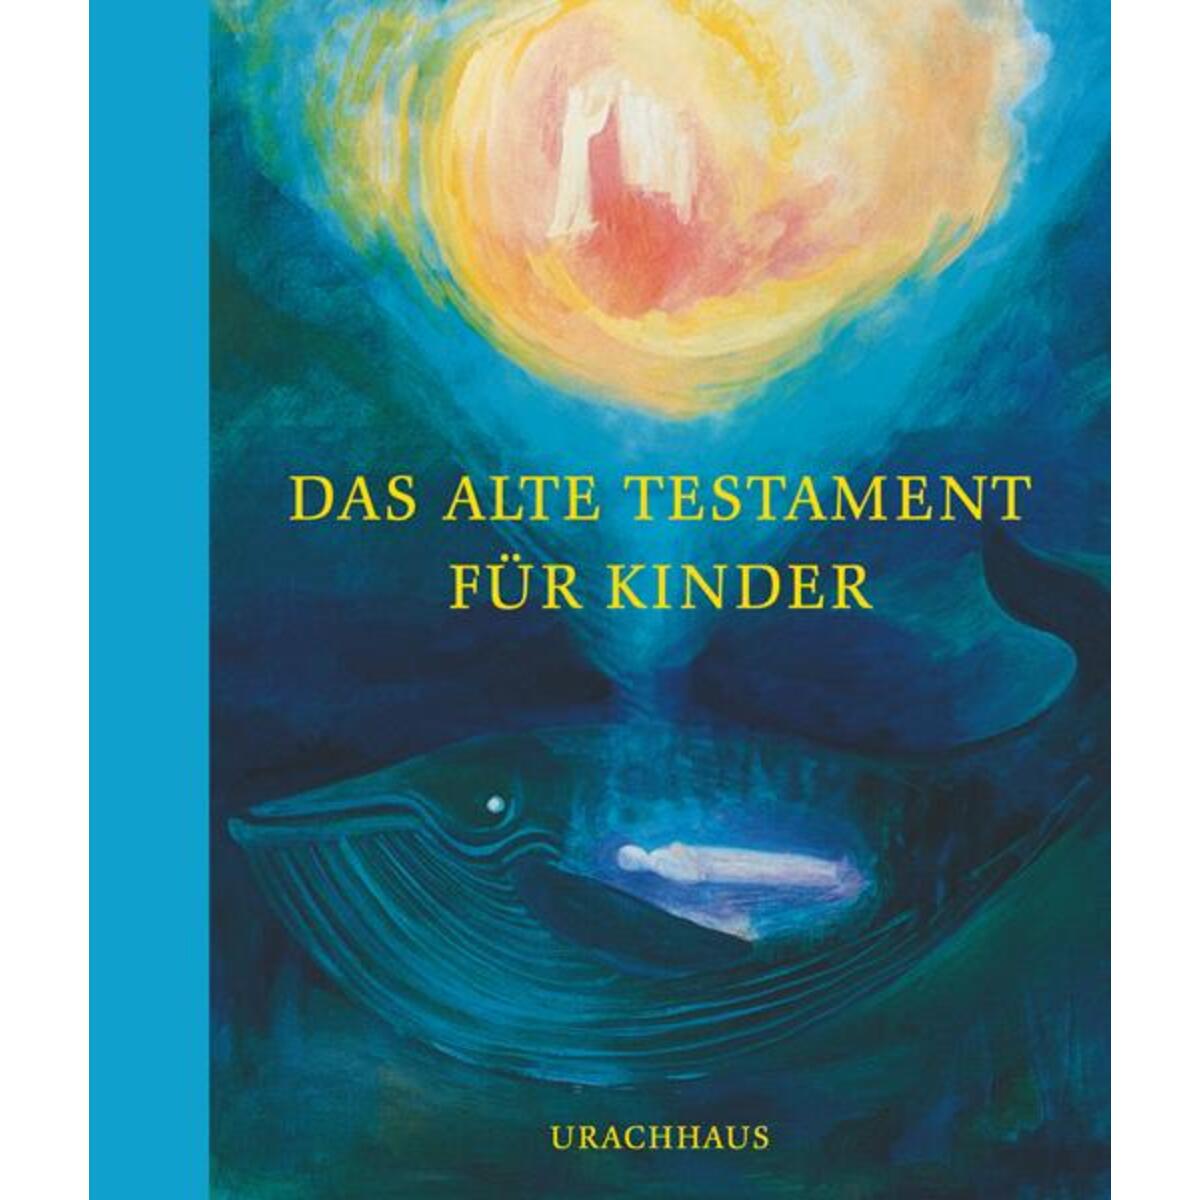 Das Alte Testament für Kinder von Urachhaus/Geistesleben